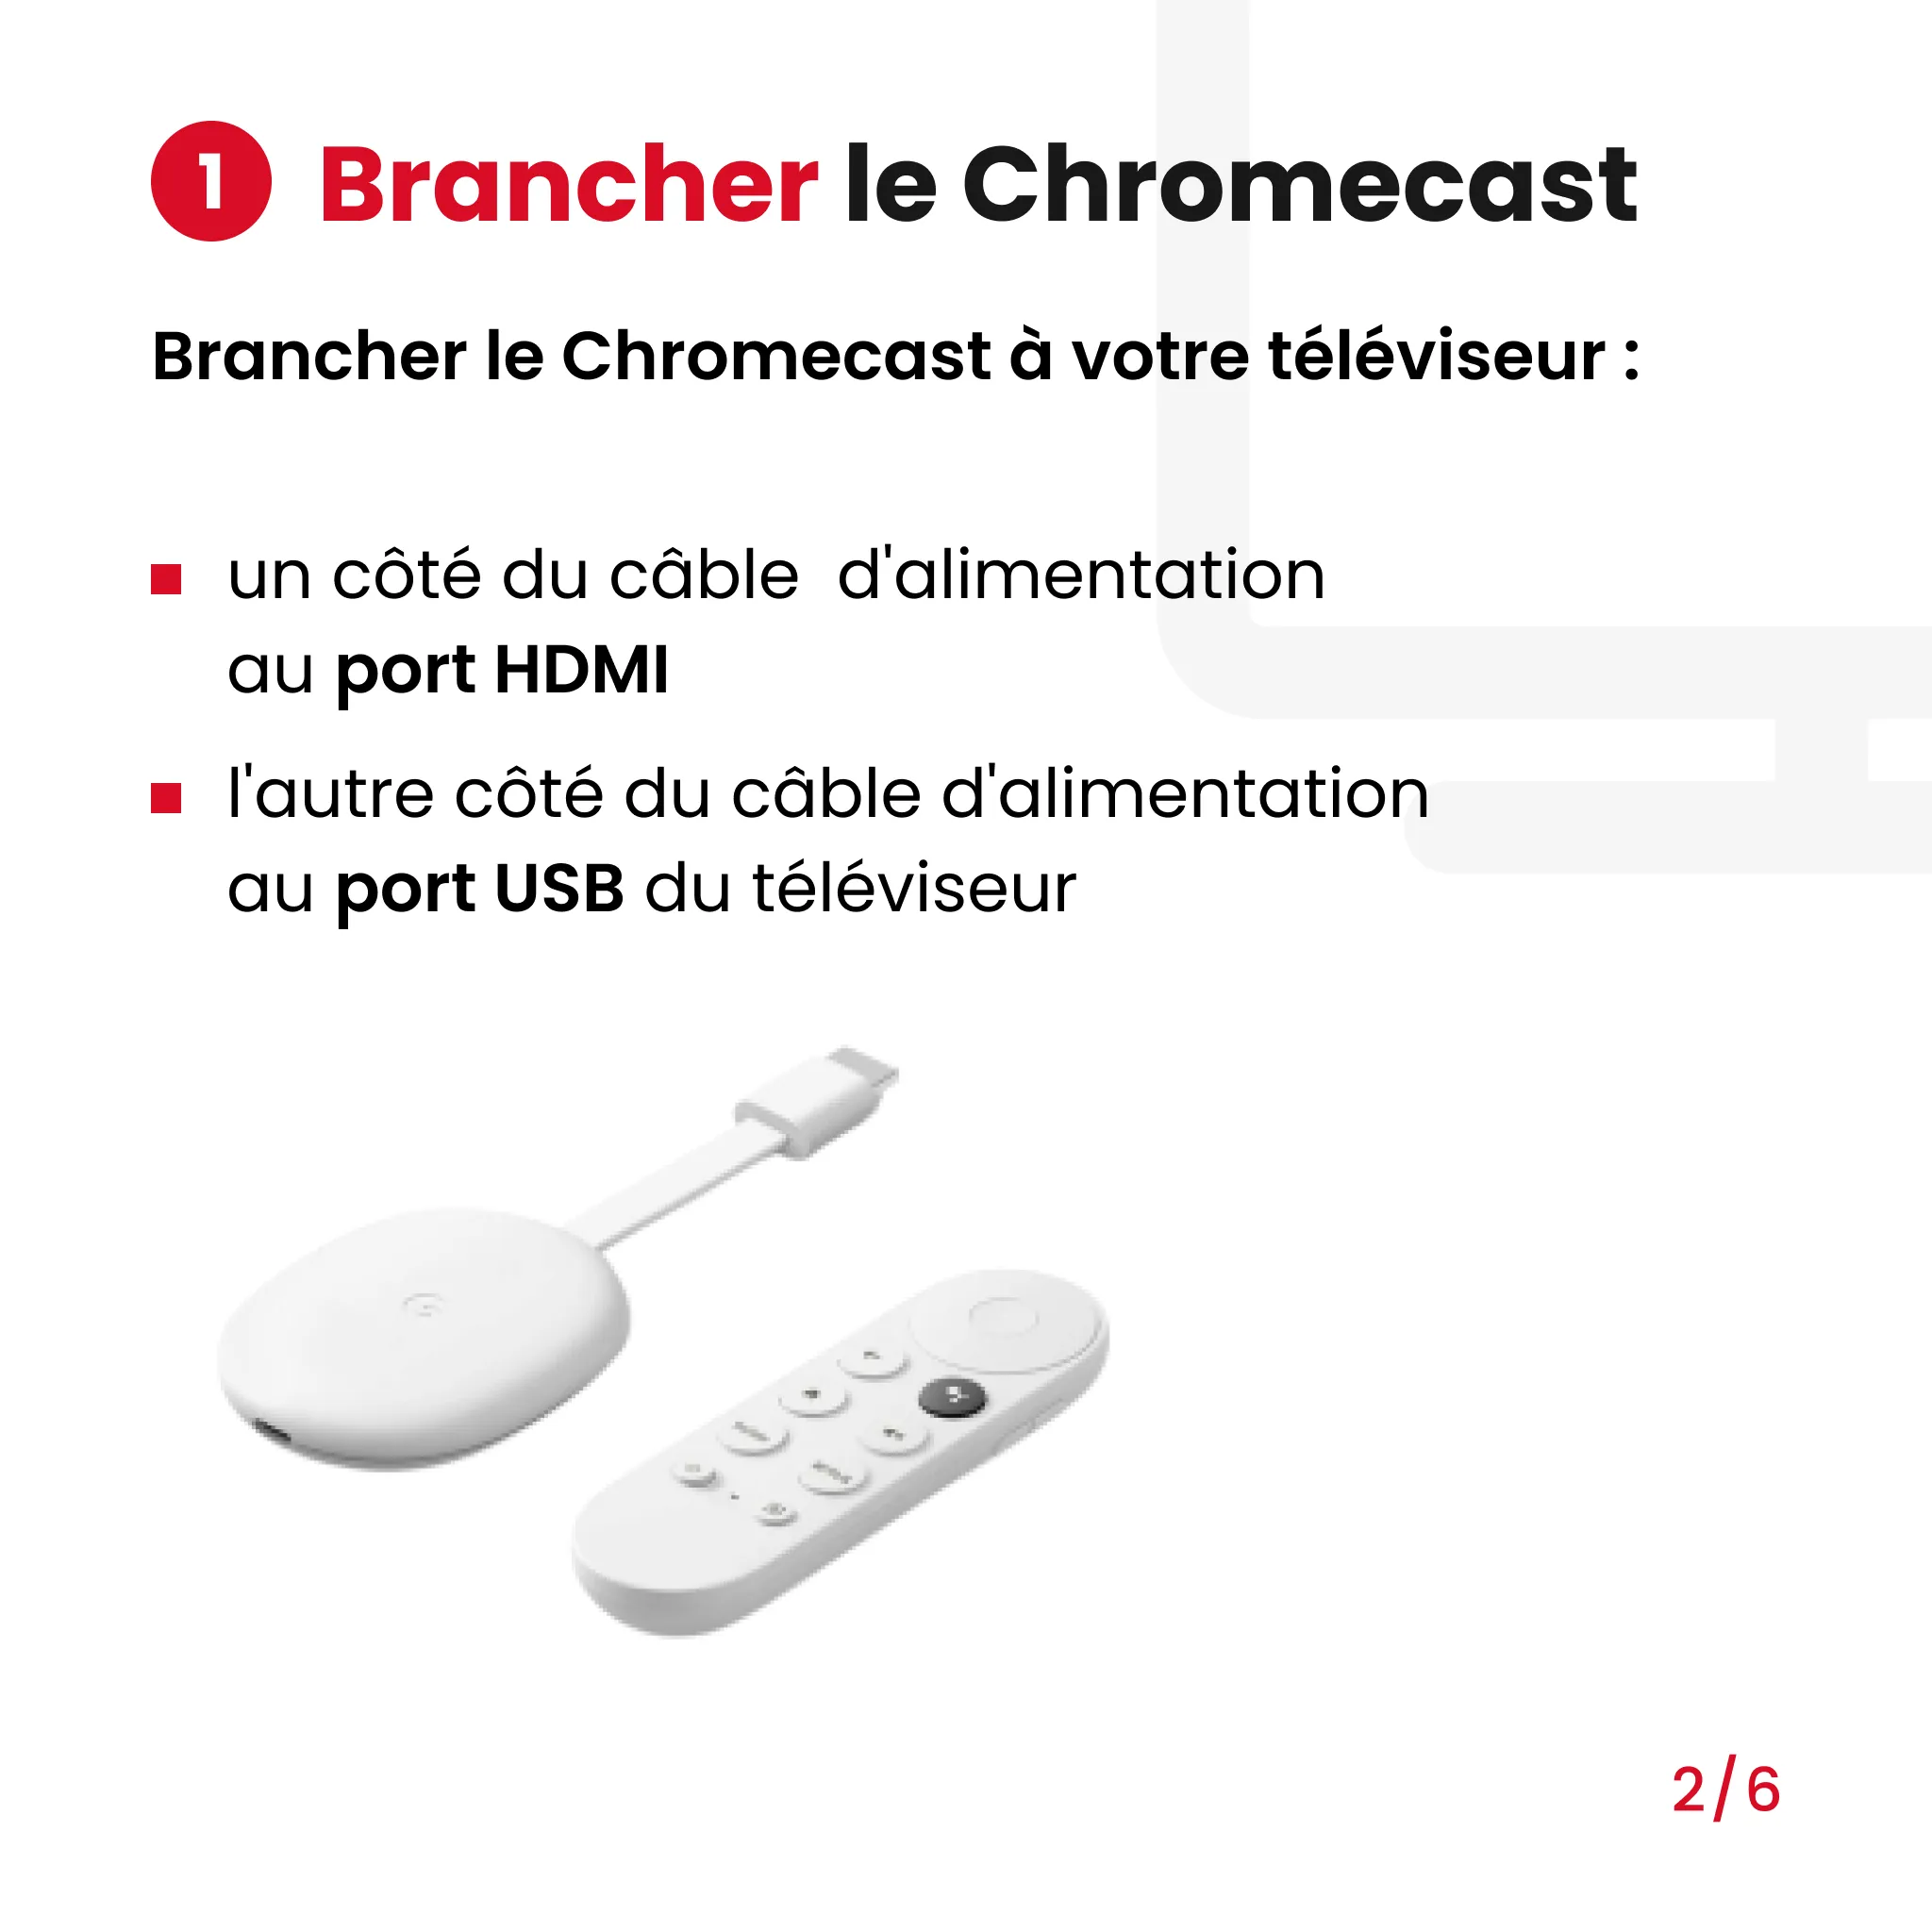 brancher le Chromecast